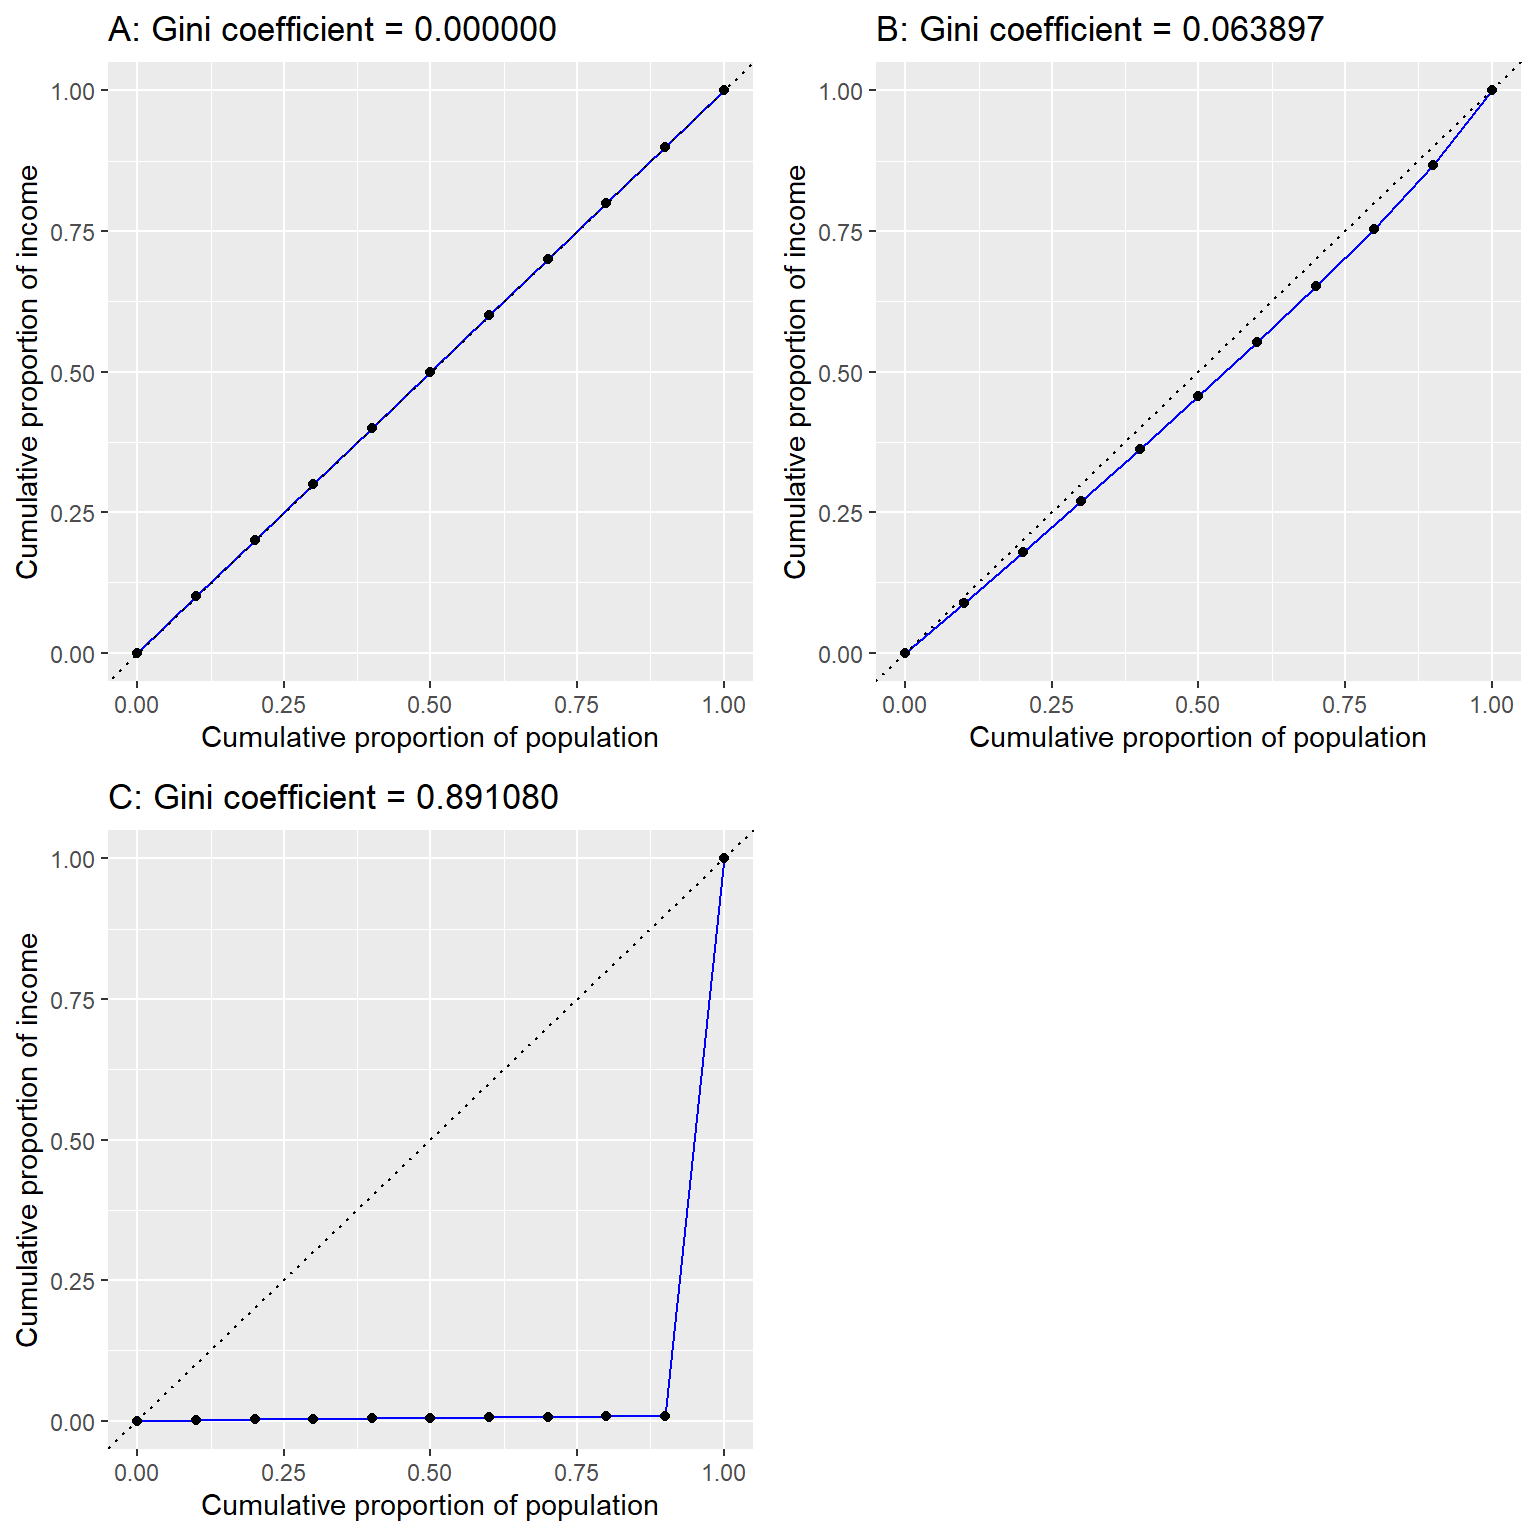 Curvas de Lorenz para A) igualdad perfecta, B) ingreso distribuido normalmente, y C) alta desigualdad (ingreso igual a excepción de una sola persona con muy altos ingresos).